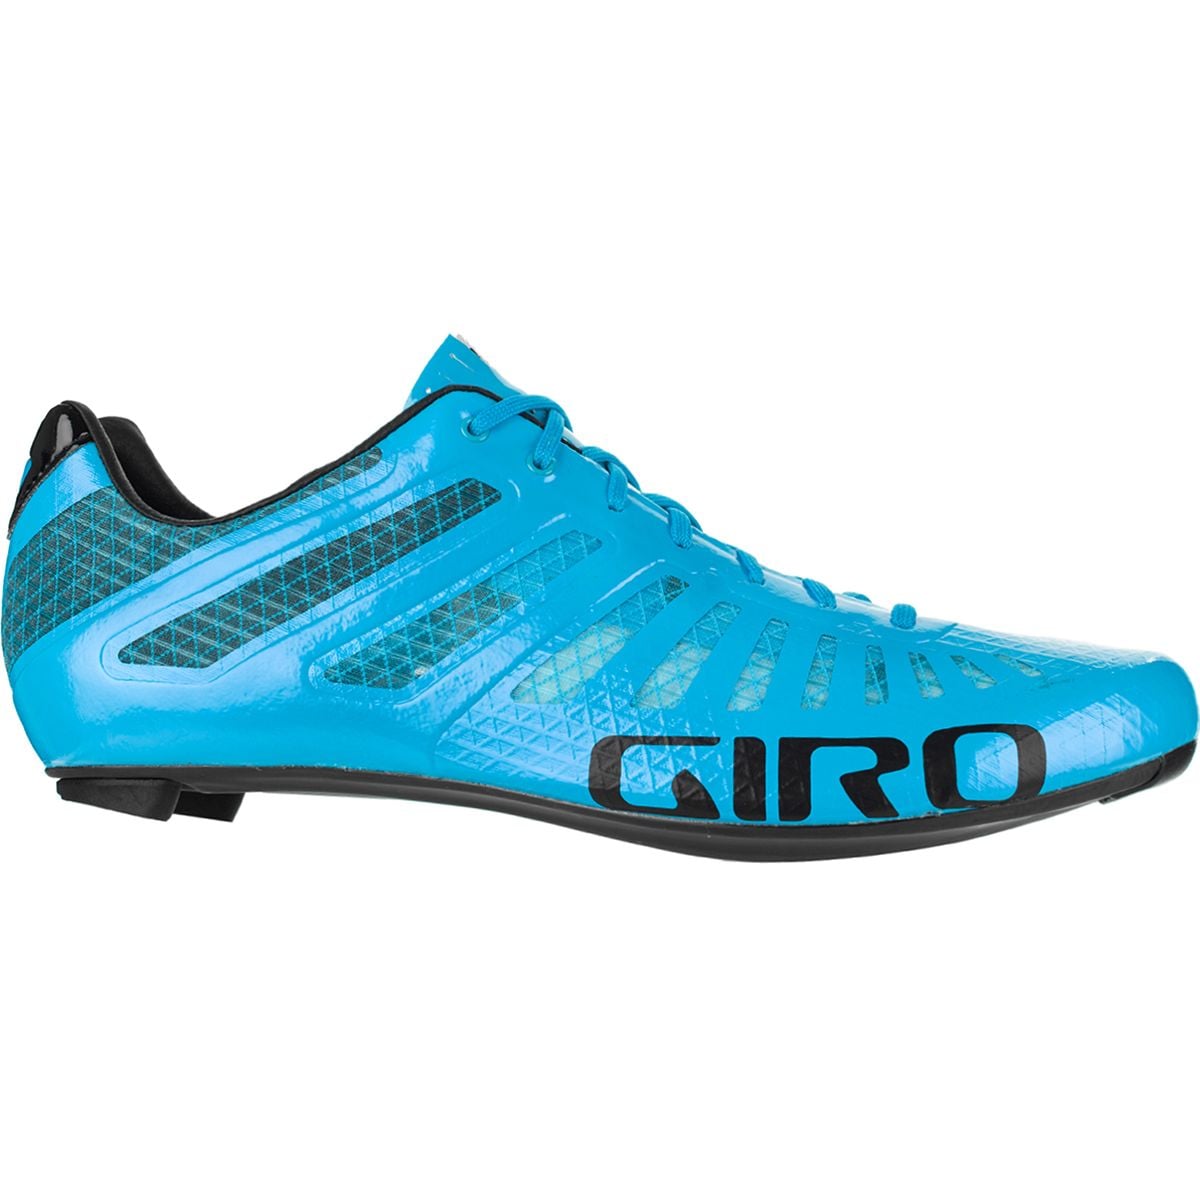 Review: Giro Republic R Knit Road Cycling Shoes